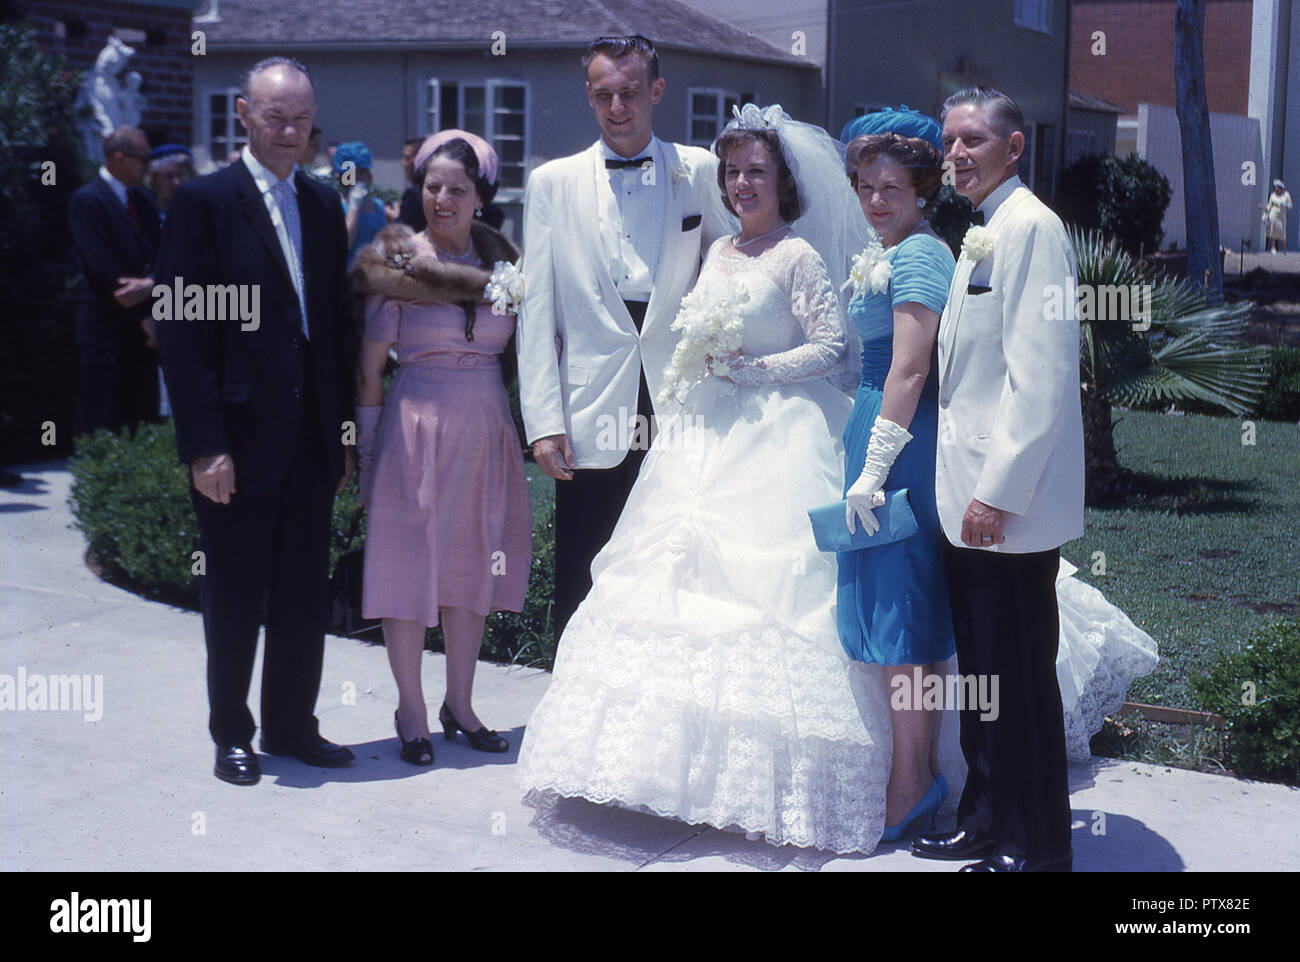 1962, historische, Hochzeit, Braut und Bräutigam Line up im Freien unter der Sonne mit ihren jeweiligen Verwandten für ein Foto, Kalifornien, USA. Stockfoto